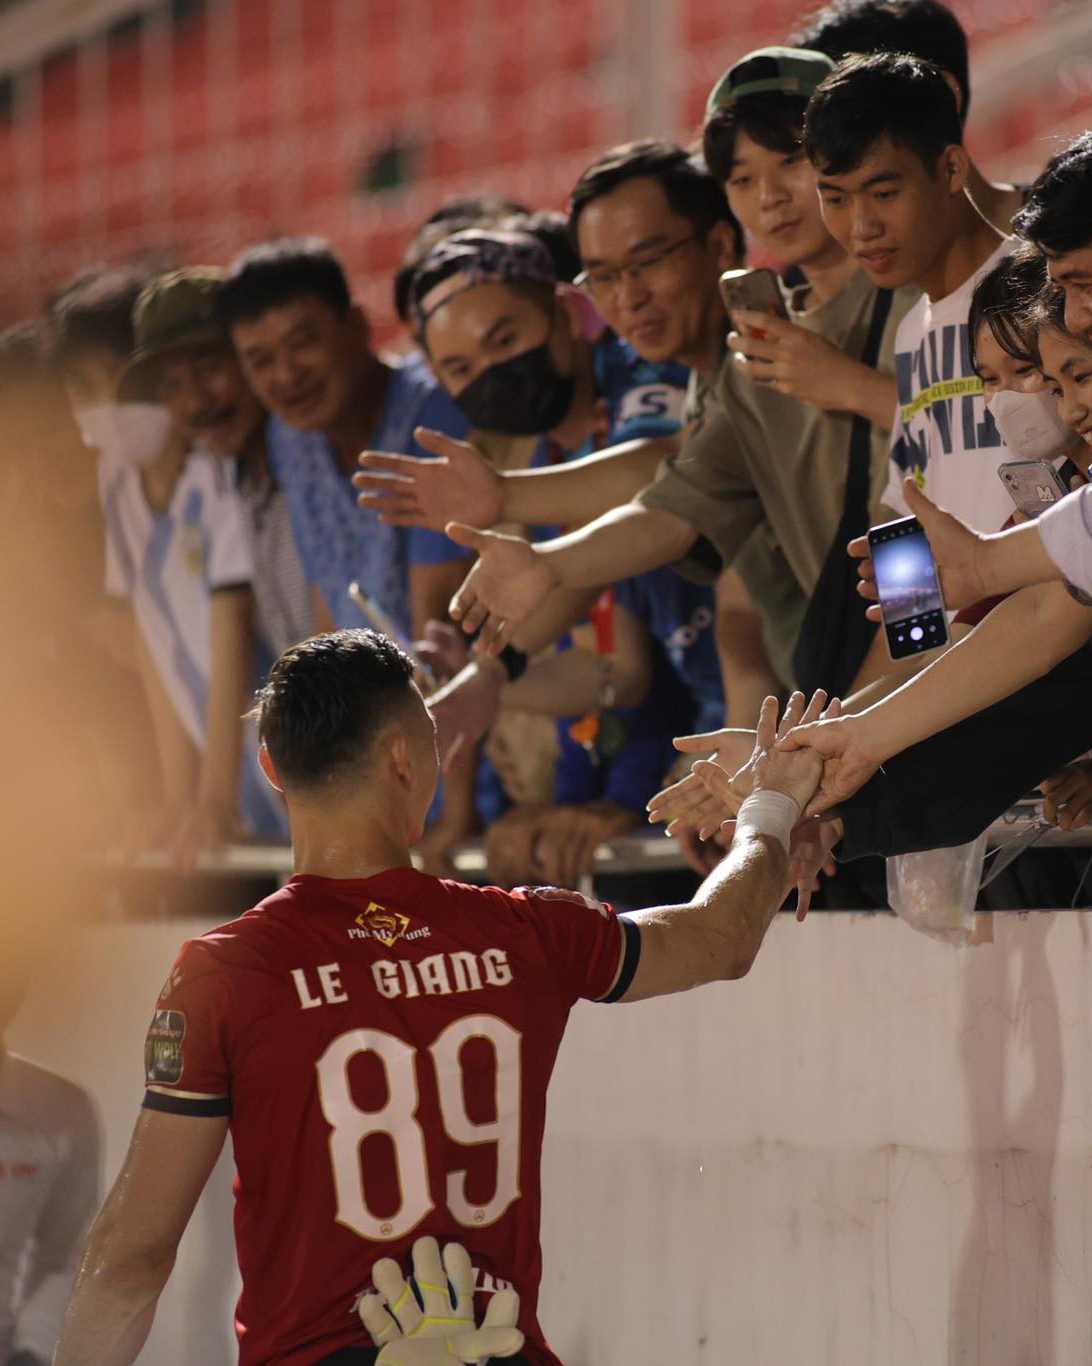 Thủ môn Patrik Lê Giang nhận nhiều sự tán dương từ người hâm mộ. Sự có mặt của thủ môn Việt kiều đã giúp sức mạnh hàng thủ của TPHCM gia tăng đáng kể.